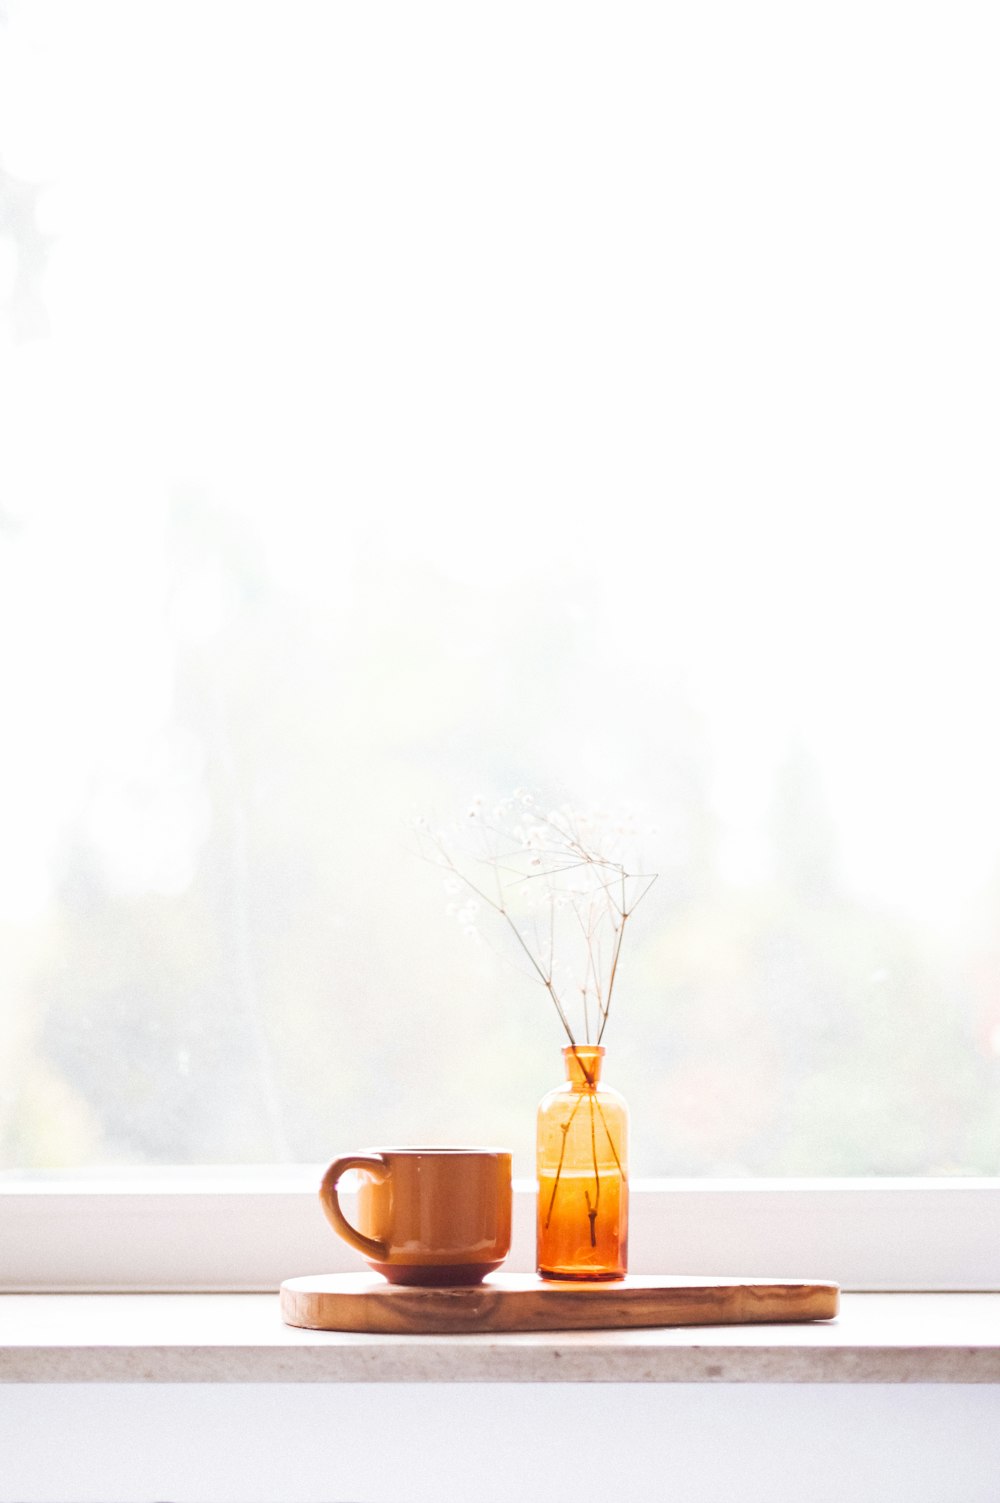 丸い茶色の板の上の琥珀色のガラス瓶の横にある茶色のマグカップ